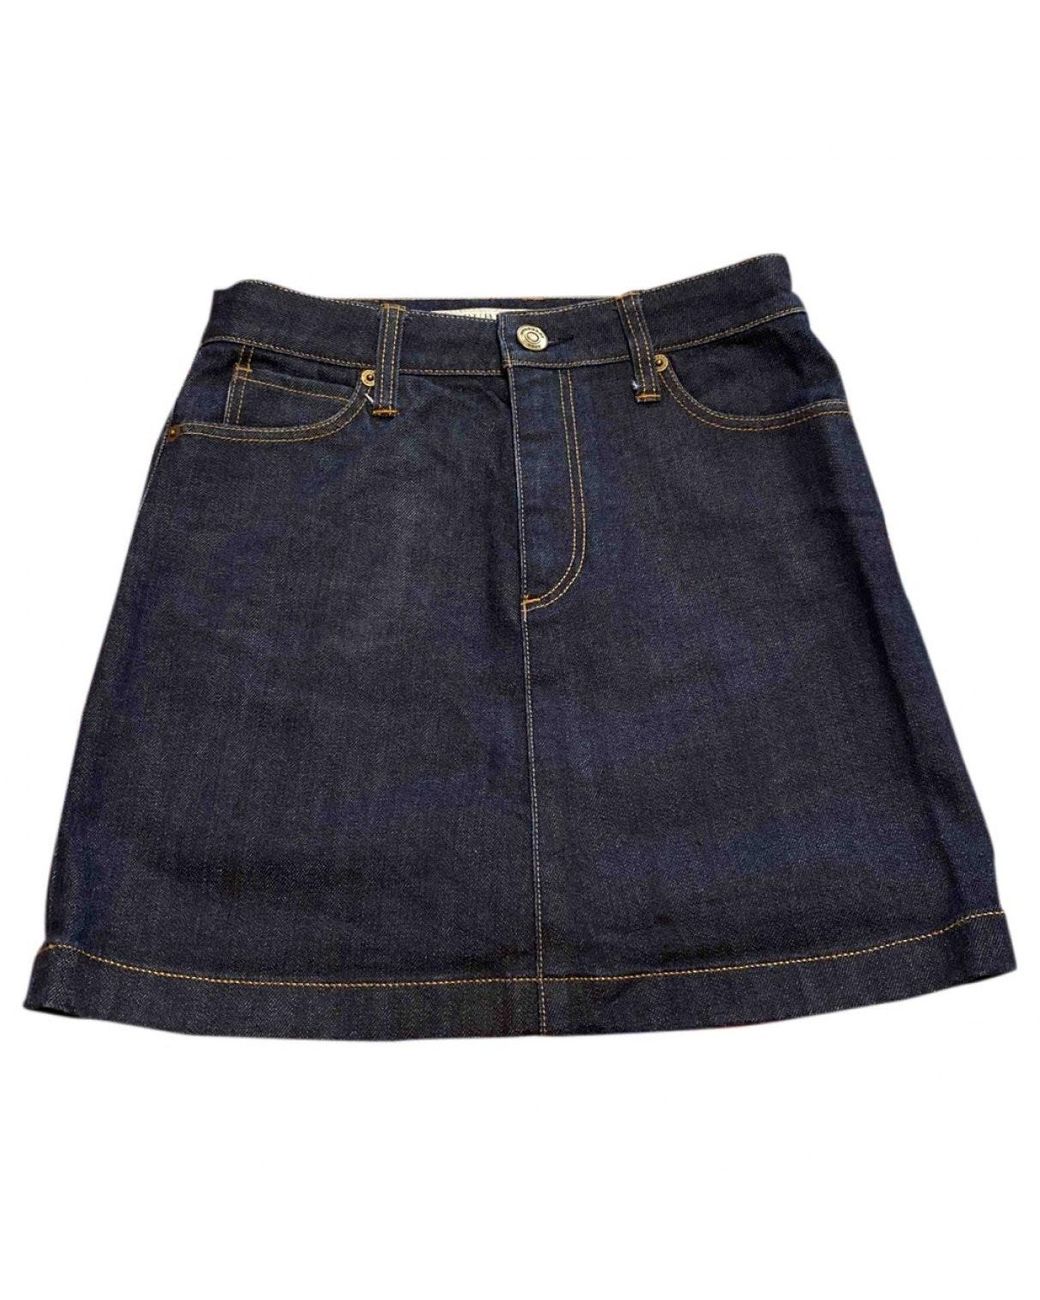 Burberry Denim Mini Skirt in Blue - Lyst